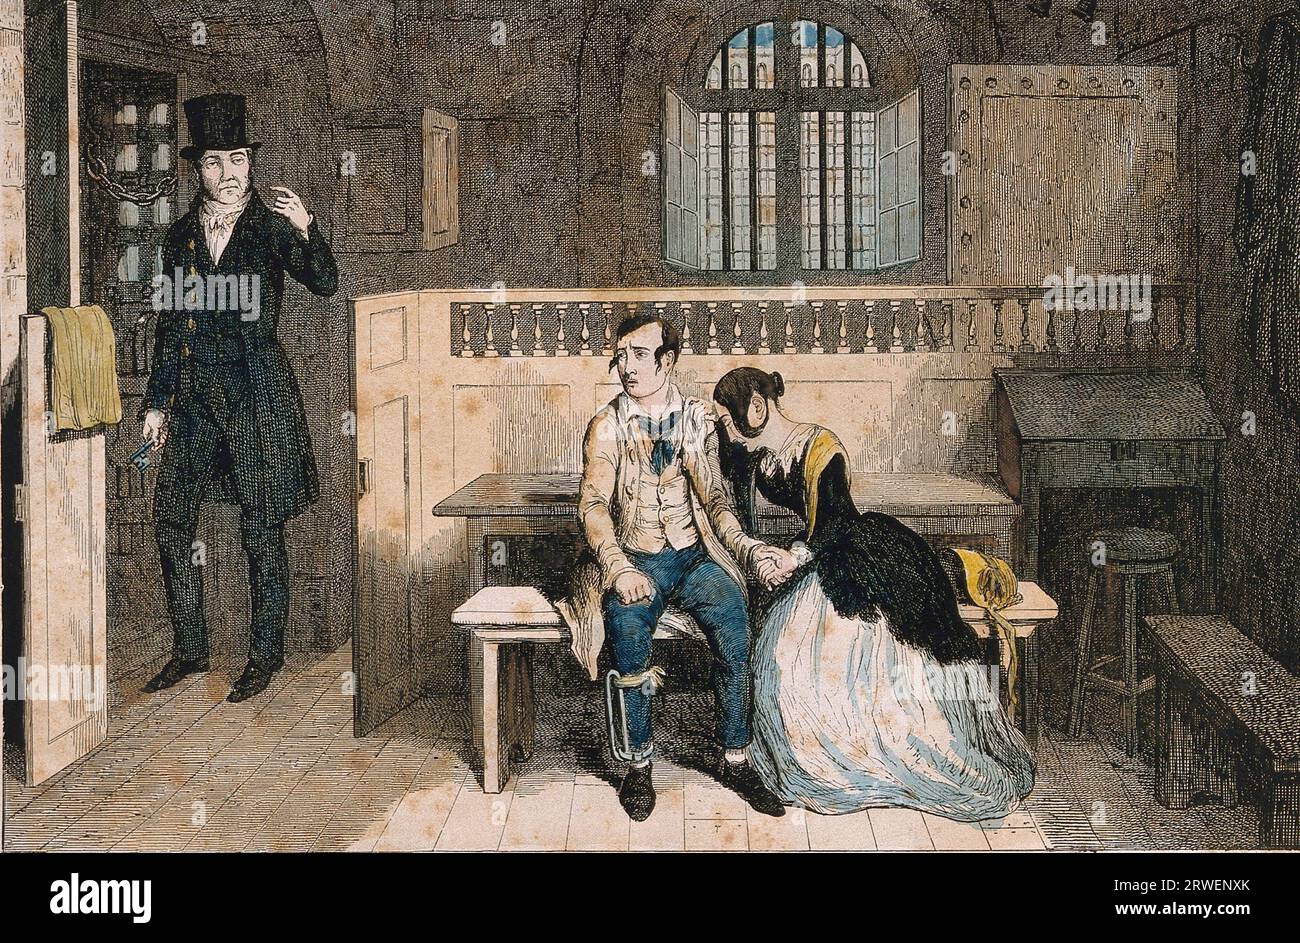 Un voleur condamné est assis en prison avec sa sœur désemparée, qui a été acquittée. Gravure colorée de G. Cruikshank, 1848, Angleterre, Historique, reproduction restaurée numériquement à partir d'une origine du 19e siècle Banque D'Images